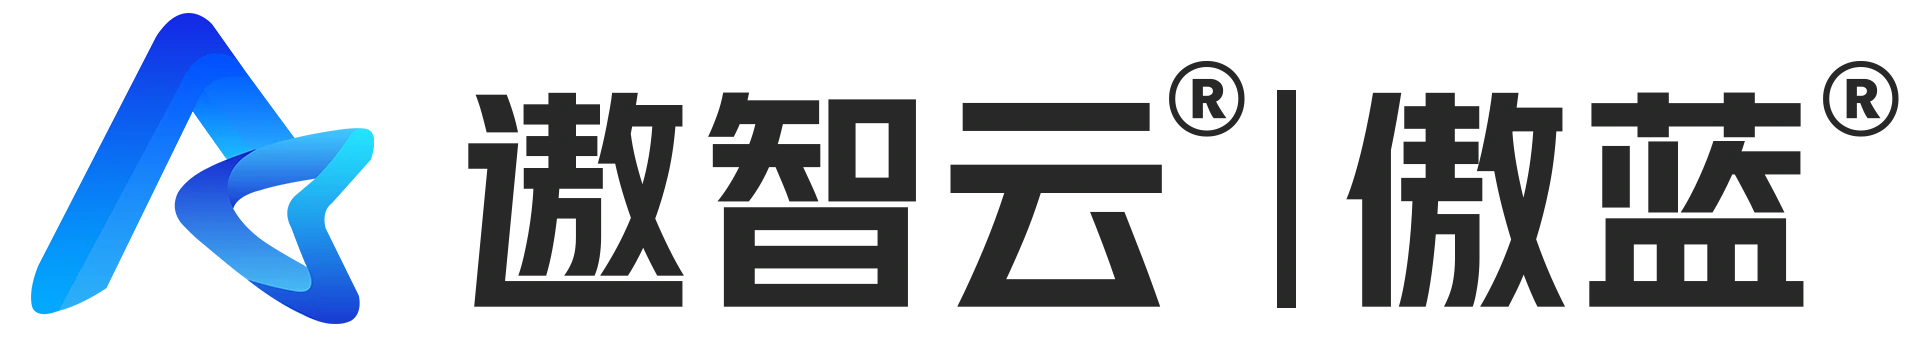 傲蓝logo